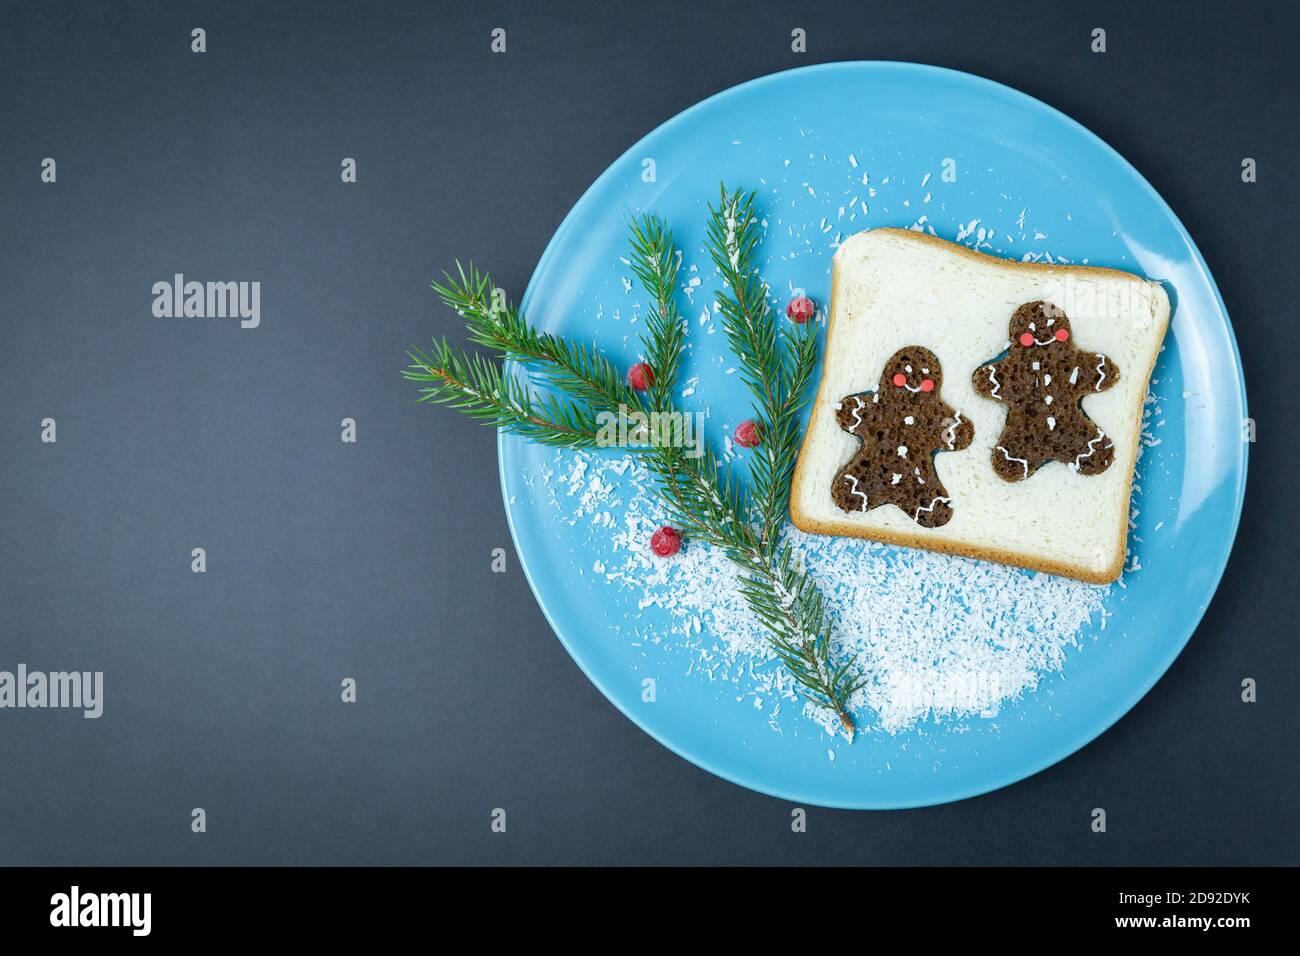 Pane tostato, decorato con pan di zenzero glaze, ribes rosso congelato, ramo di abete rosso su un piatto blu, su uno sfondo scuro. Natale, anno nuovo. Fest Foto Stock